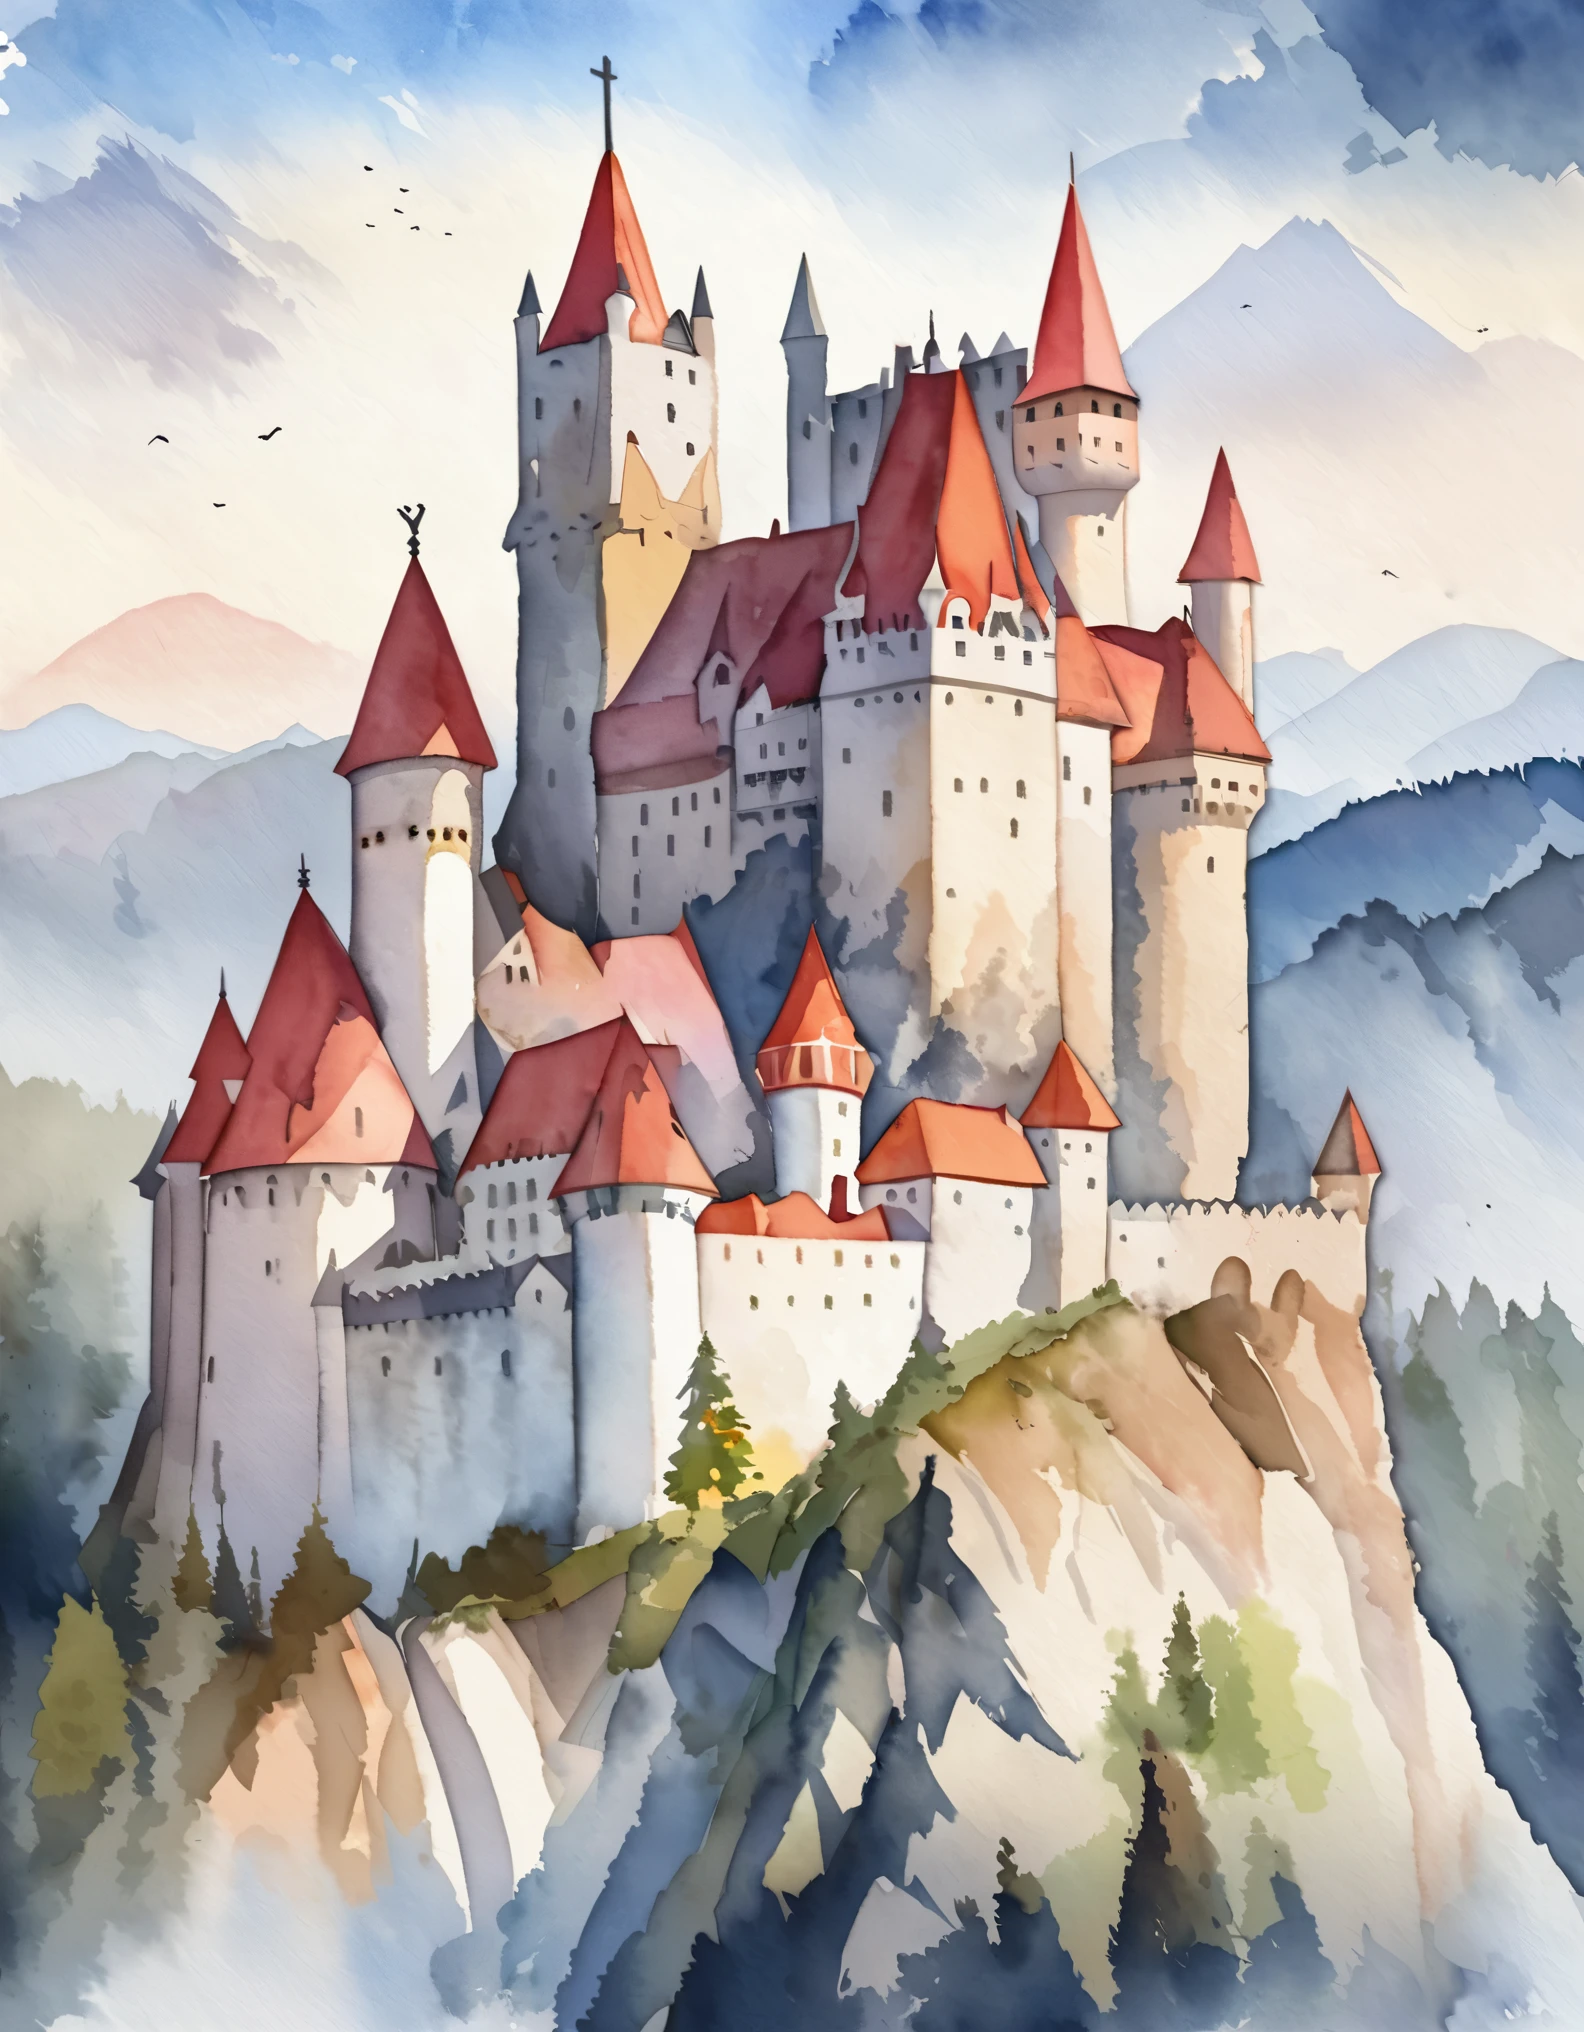 Замок Бран, Румынский замок, Замок Дракулы, легенды и тайны, вершина горы, акварель:1.2, причудливый и нежный, Как иллюстрация у детей&#39;книга, Нежная кисть, тусклый, Бледные цвета создают фантастический вид.